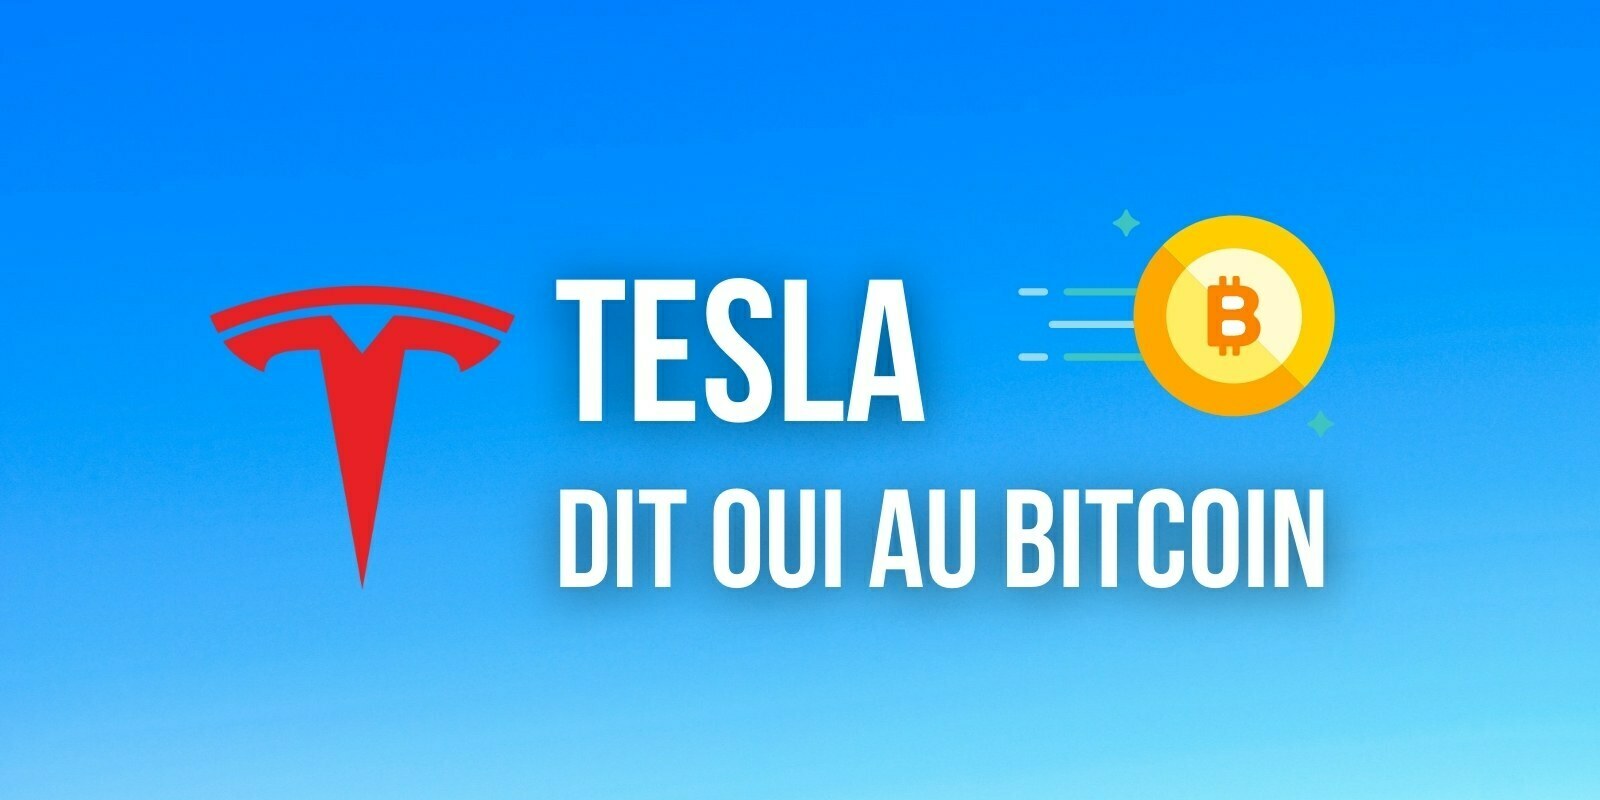 Tesla envisage d'accepter à nouveau le Bitcoin (BTC) comme moyen de paiement